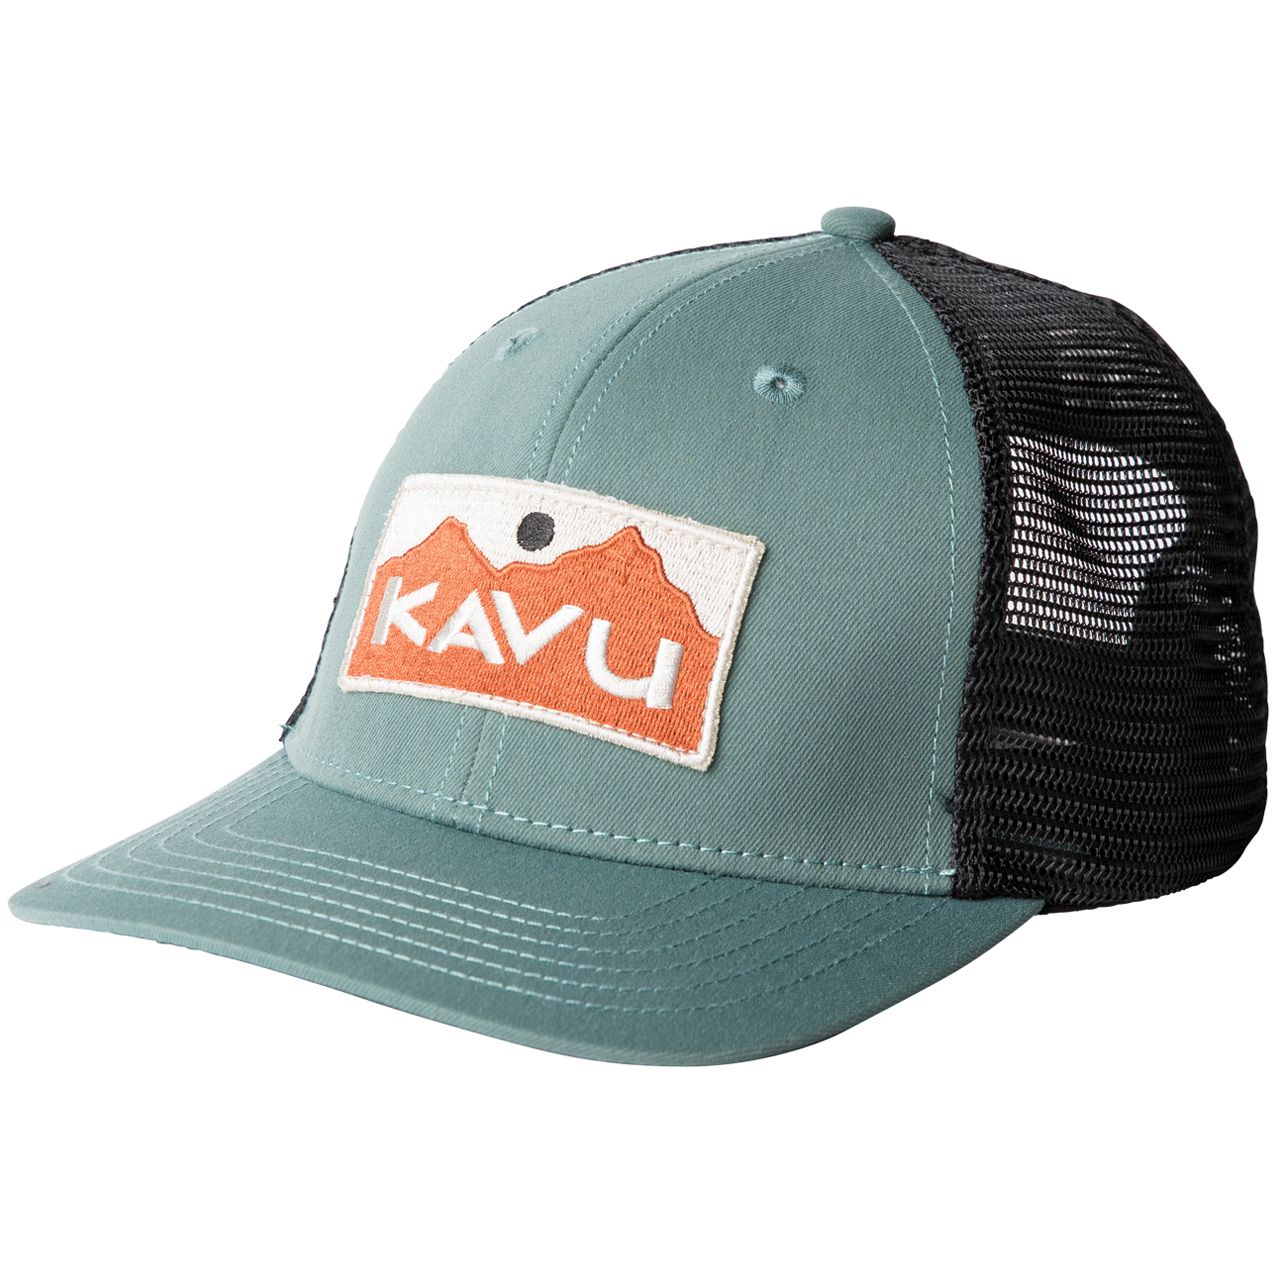 Productfoto van KAVU Above Standard Trucker Cap - Dark Forest